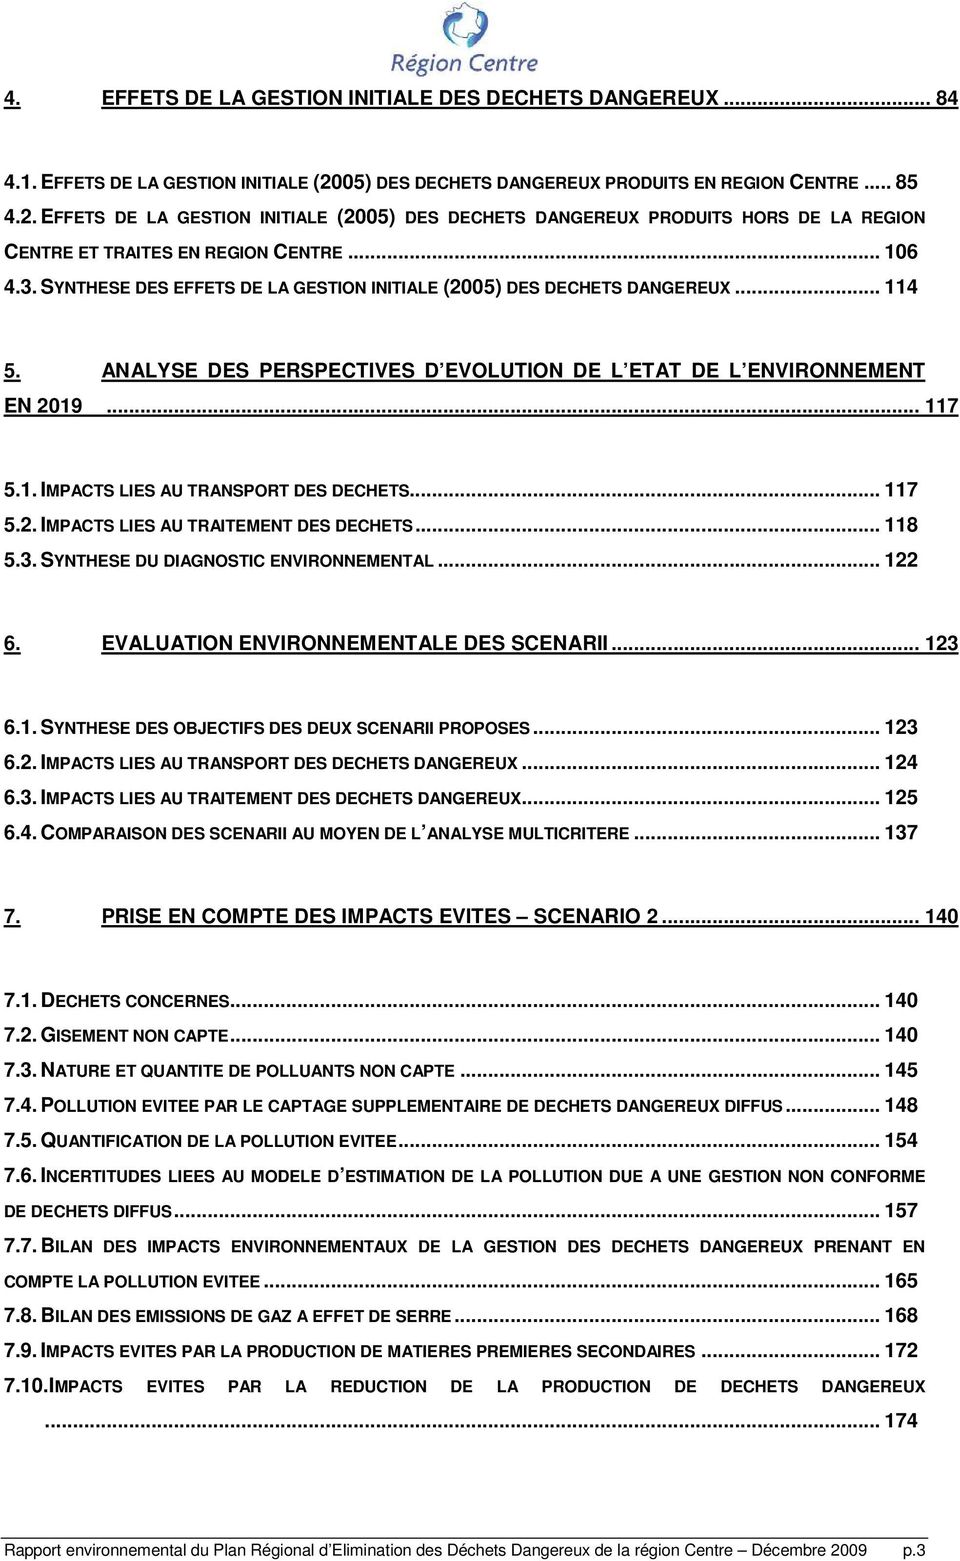 SYNTHESE DES EFFETS DE LA GESTION INITIALE (2005) DES DECHETS DANGEREUX... 114 5. ANALYSE DES PERSPECTIVES D EVOLUTION DE L ETAT DE L ENVIRONNEMENT EN 2019... 117 5.1. IMPACTS LIES AU TRANSPORT DES DECHETS.